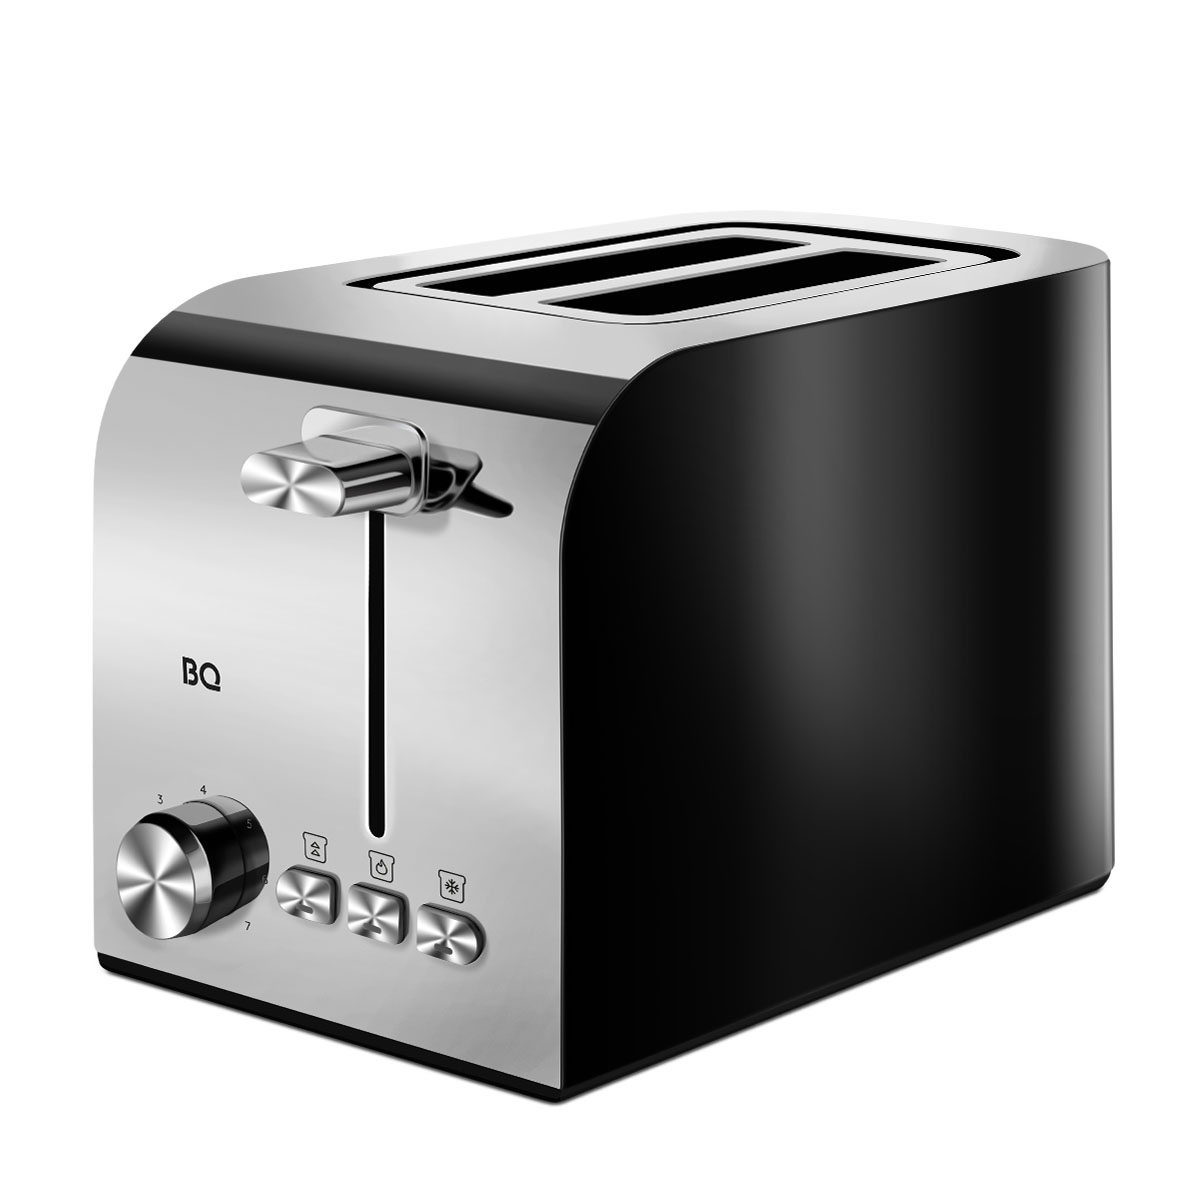 Тостер BQ T2000 серебристый, черный тостер sakura sa 7608r 750 вт 5 режимов прожарки 2 тоста красный